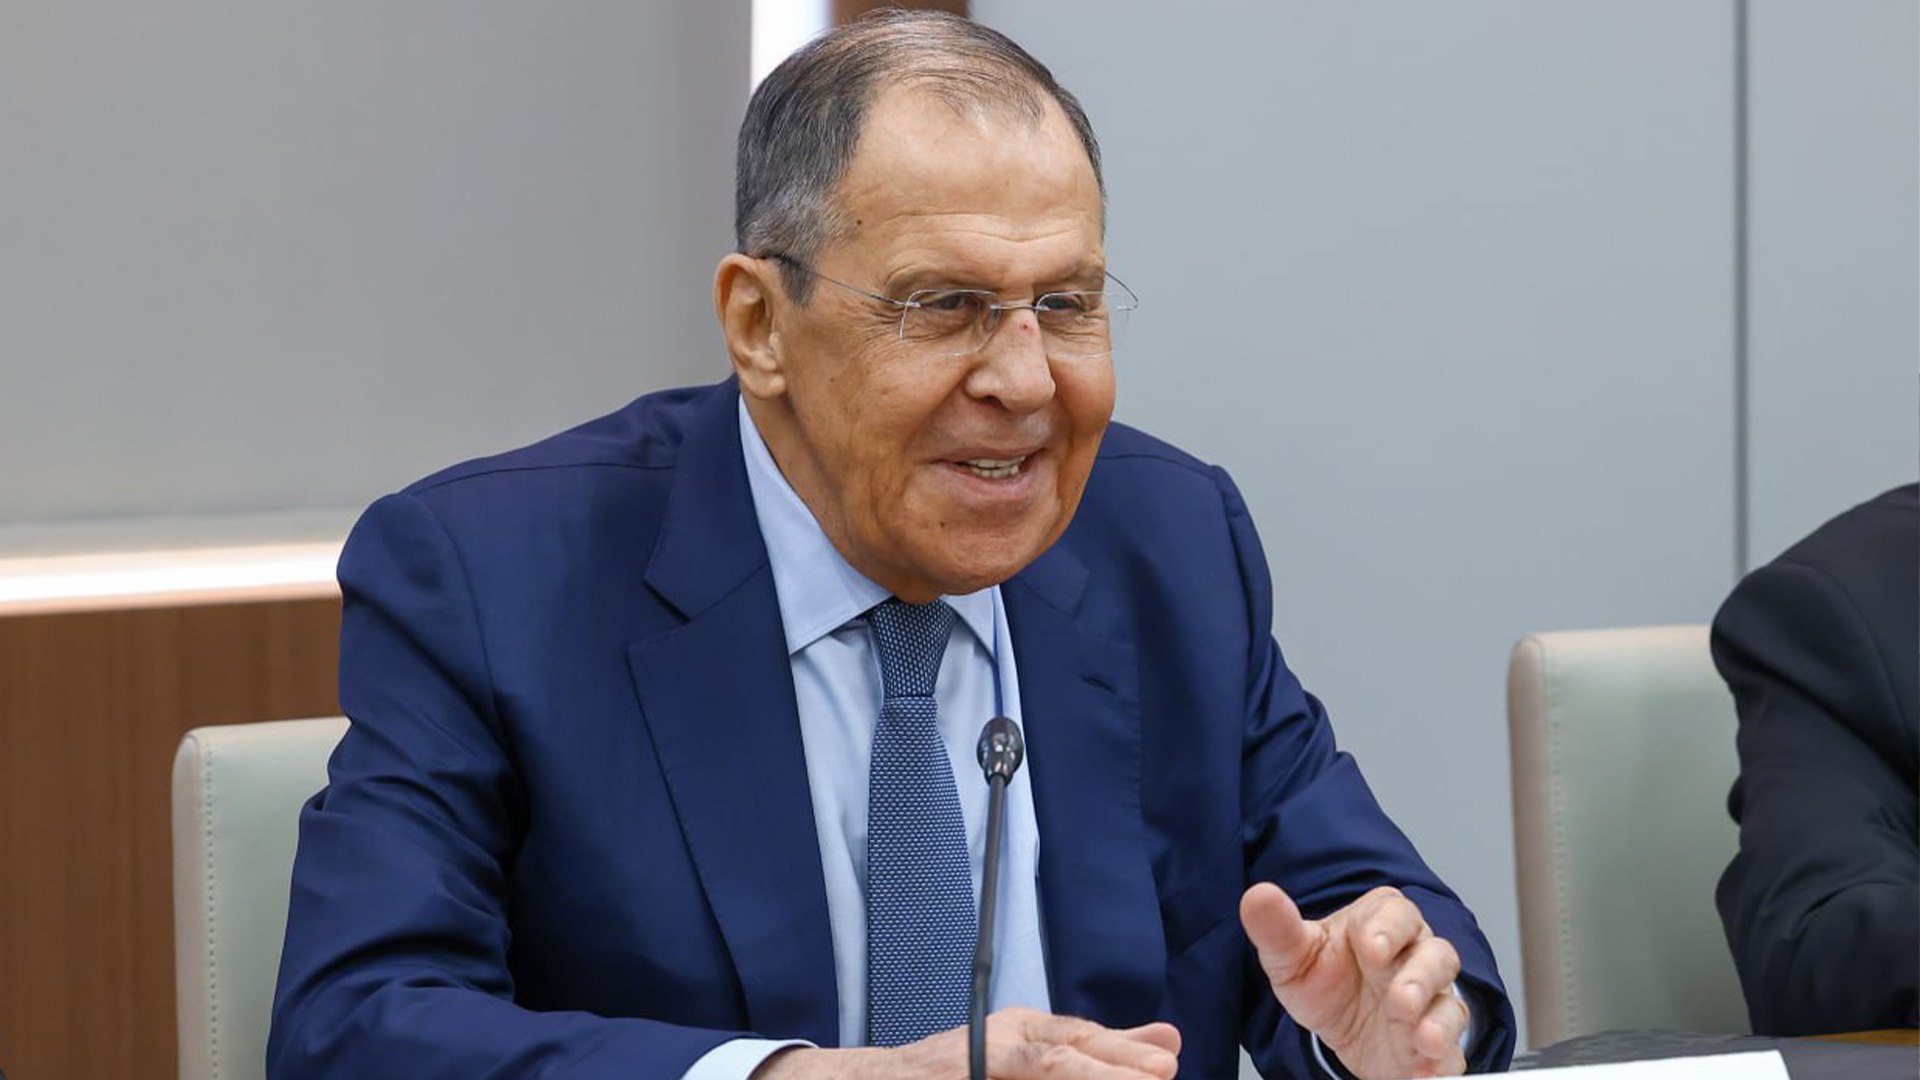 Lavrov: “Rəsmi Moskva üçtərəfli sazişin qeyd-şərtsiz yerinə yetirilməsinin tərəfdarıdır“